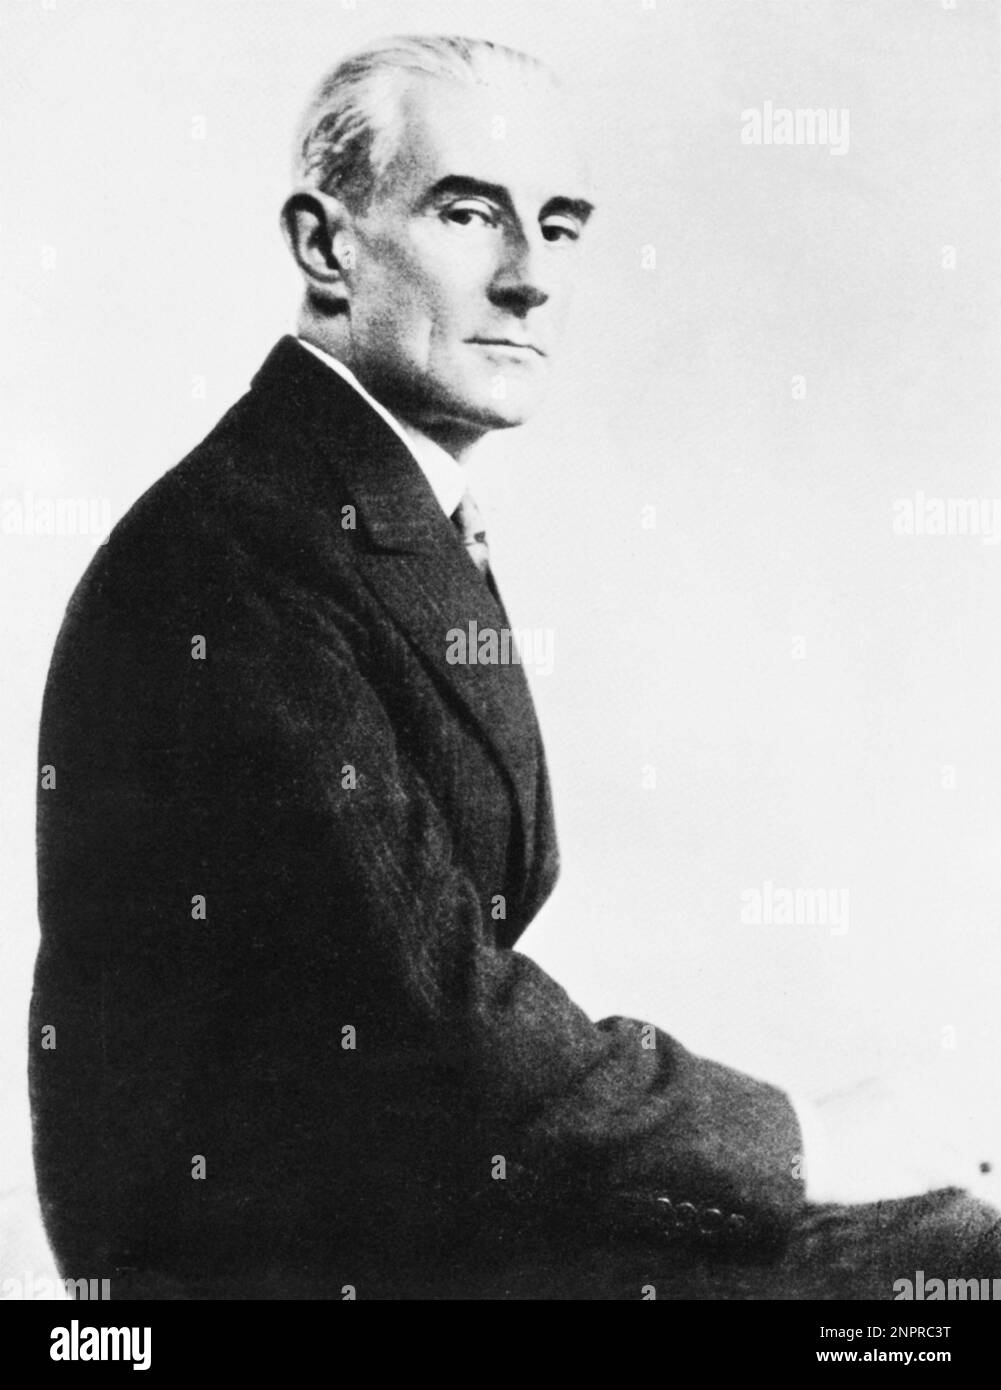 Рав ел. Морис Равель. Maurice Joseph Ravel. Maurice Ravel (1875-1937). Морис Равель композитор.